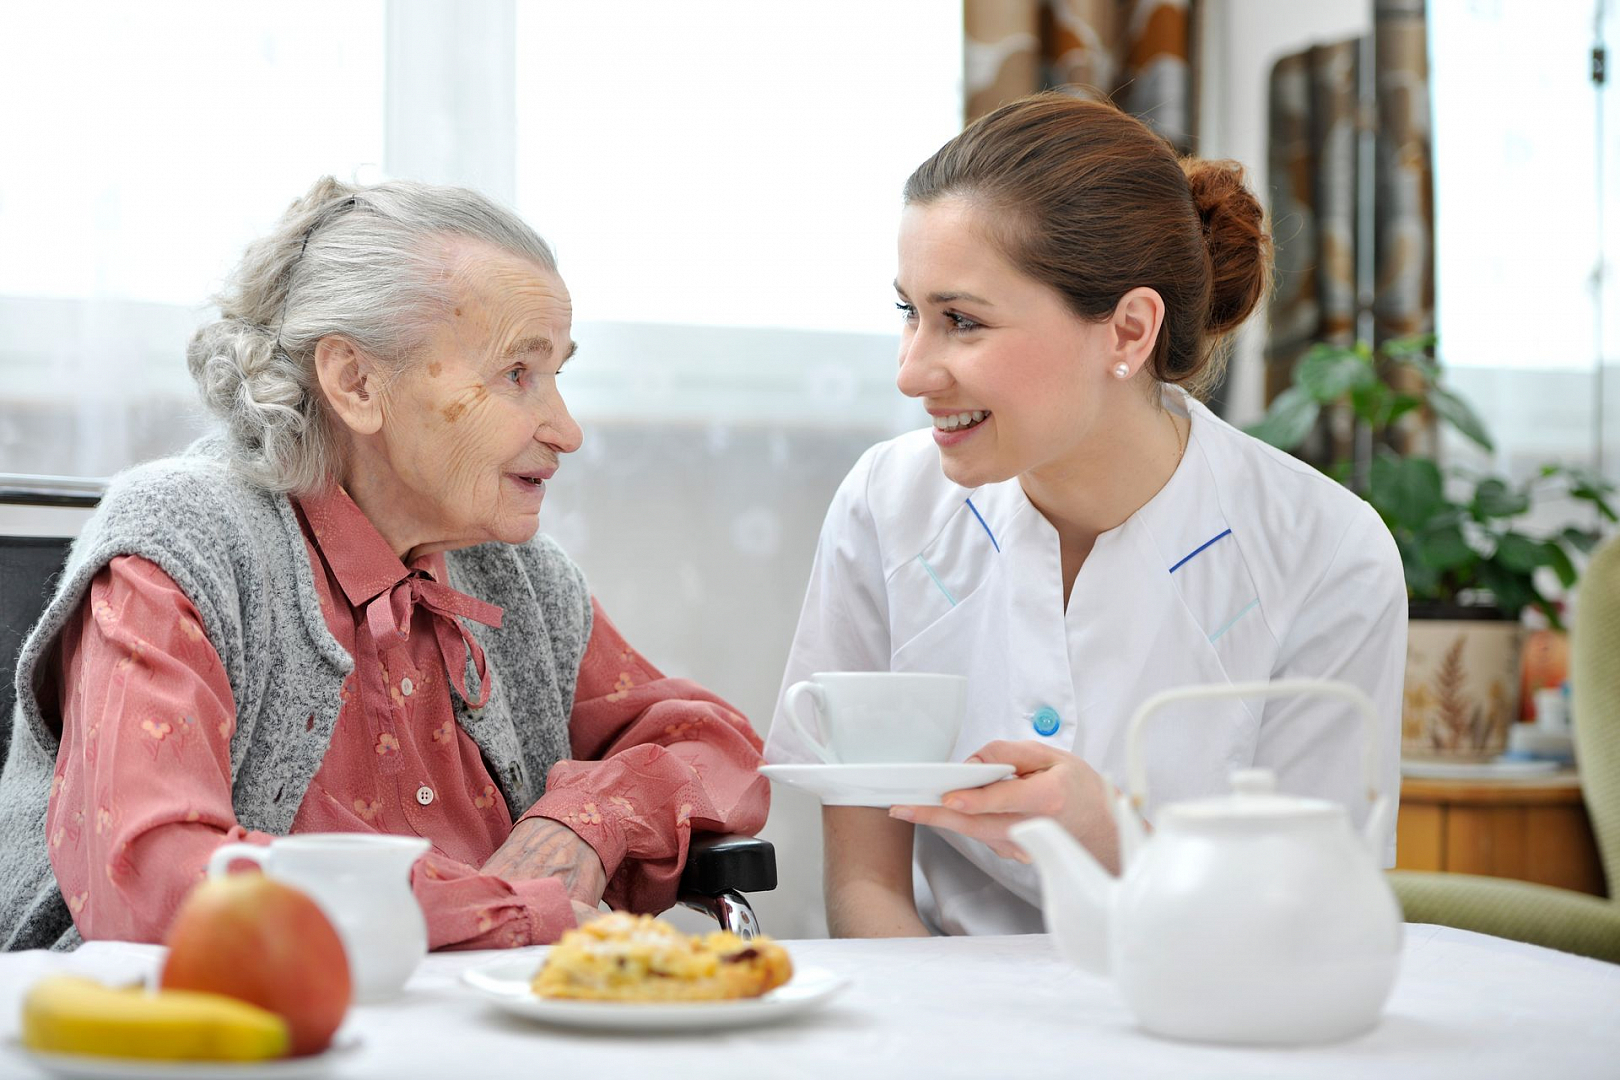 Дома для престарелых и инвалидов "Времена года" специализируются на квалифицированном уходе и присмотре за пожилыми людьми. Наш дружелюбный коллектив окружит заботой и вниманием вашего пожилого родственника, даст уверенность в завтрашнем дне. Если вашим родителям, бабушке или дедушке нужен присмотр и уход в связи с ухудшением здоровья, устройте его в пансионат для престарелых "Времена года" в Подгоренском. Пансионат для пожилых с Альцгеймером Болезнь Альцгеймера возникает у пожилых людей. Она вызывает проблемы с памятью, мышлением и поведением. За престарелым с этим заболеванием нужен круглосуточный уход и присмотр. Его нельзя оставлять самого, так как это может стоить старику здоровья и жизни. Для пожилых с Альцгеймером в частном доме престарелых в Подгоренском работают профессиональные сиделки, которые помогают пожилым людям одеваться, есть, мыться. Они следят за изменениями в поведении престарелых и при необходимости рекомендуют привлекать психологов из медицинского центра. Сестры милосердия сопровождают подопечных на прогулке, выслушивают стариков. Это очень помогает их расслабить, дает чувство дружеской поддержки. Пансионаты для престарелых недорого Люди часто думают, что определить пенсионера в дом-интернат для престарелых и инвалидов — это дорого. Но если вы посмотрите сколько времени, сил и средств нужно потратить, чтобы ухаживать за пожилым родственником дома, то поймете на сколько дом престарелых — лучше по всем параметрам. Частный пансионат для пожилых людей "Времена года" в Подгоренском оказывает помощь всем, кто в ней нуждается. Но стоимость наших услуг зависит от нескольких фактор: 1.	Размещение. Если вы хотите, чтобы ваш пожилой родственник жил в одноместном VIP номере с личным санузлом, личной сиделкой, которая будет присматривать и ухаживать только за ним, то и стоимость будет высокой. 2.	Уход. Если вашем пожилой родственник тяжело болен, ему нужен постоянный уход и контроль, но он заселяется в двухместный, трехместный или четырехместный номер, то стоимость услуг будет средней. 3.	Общение. Если глав